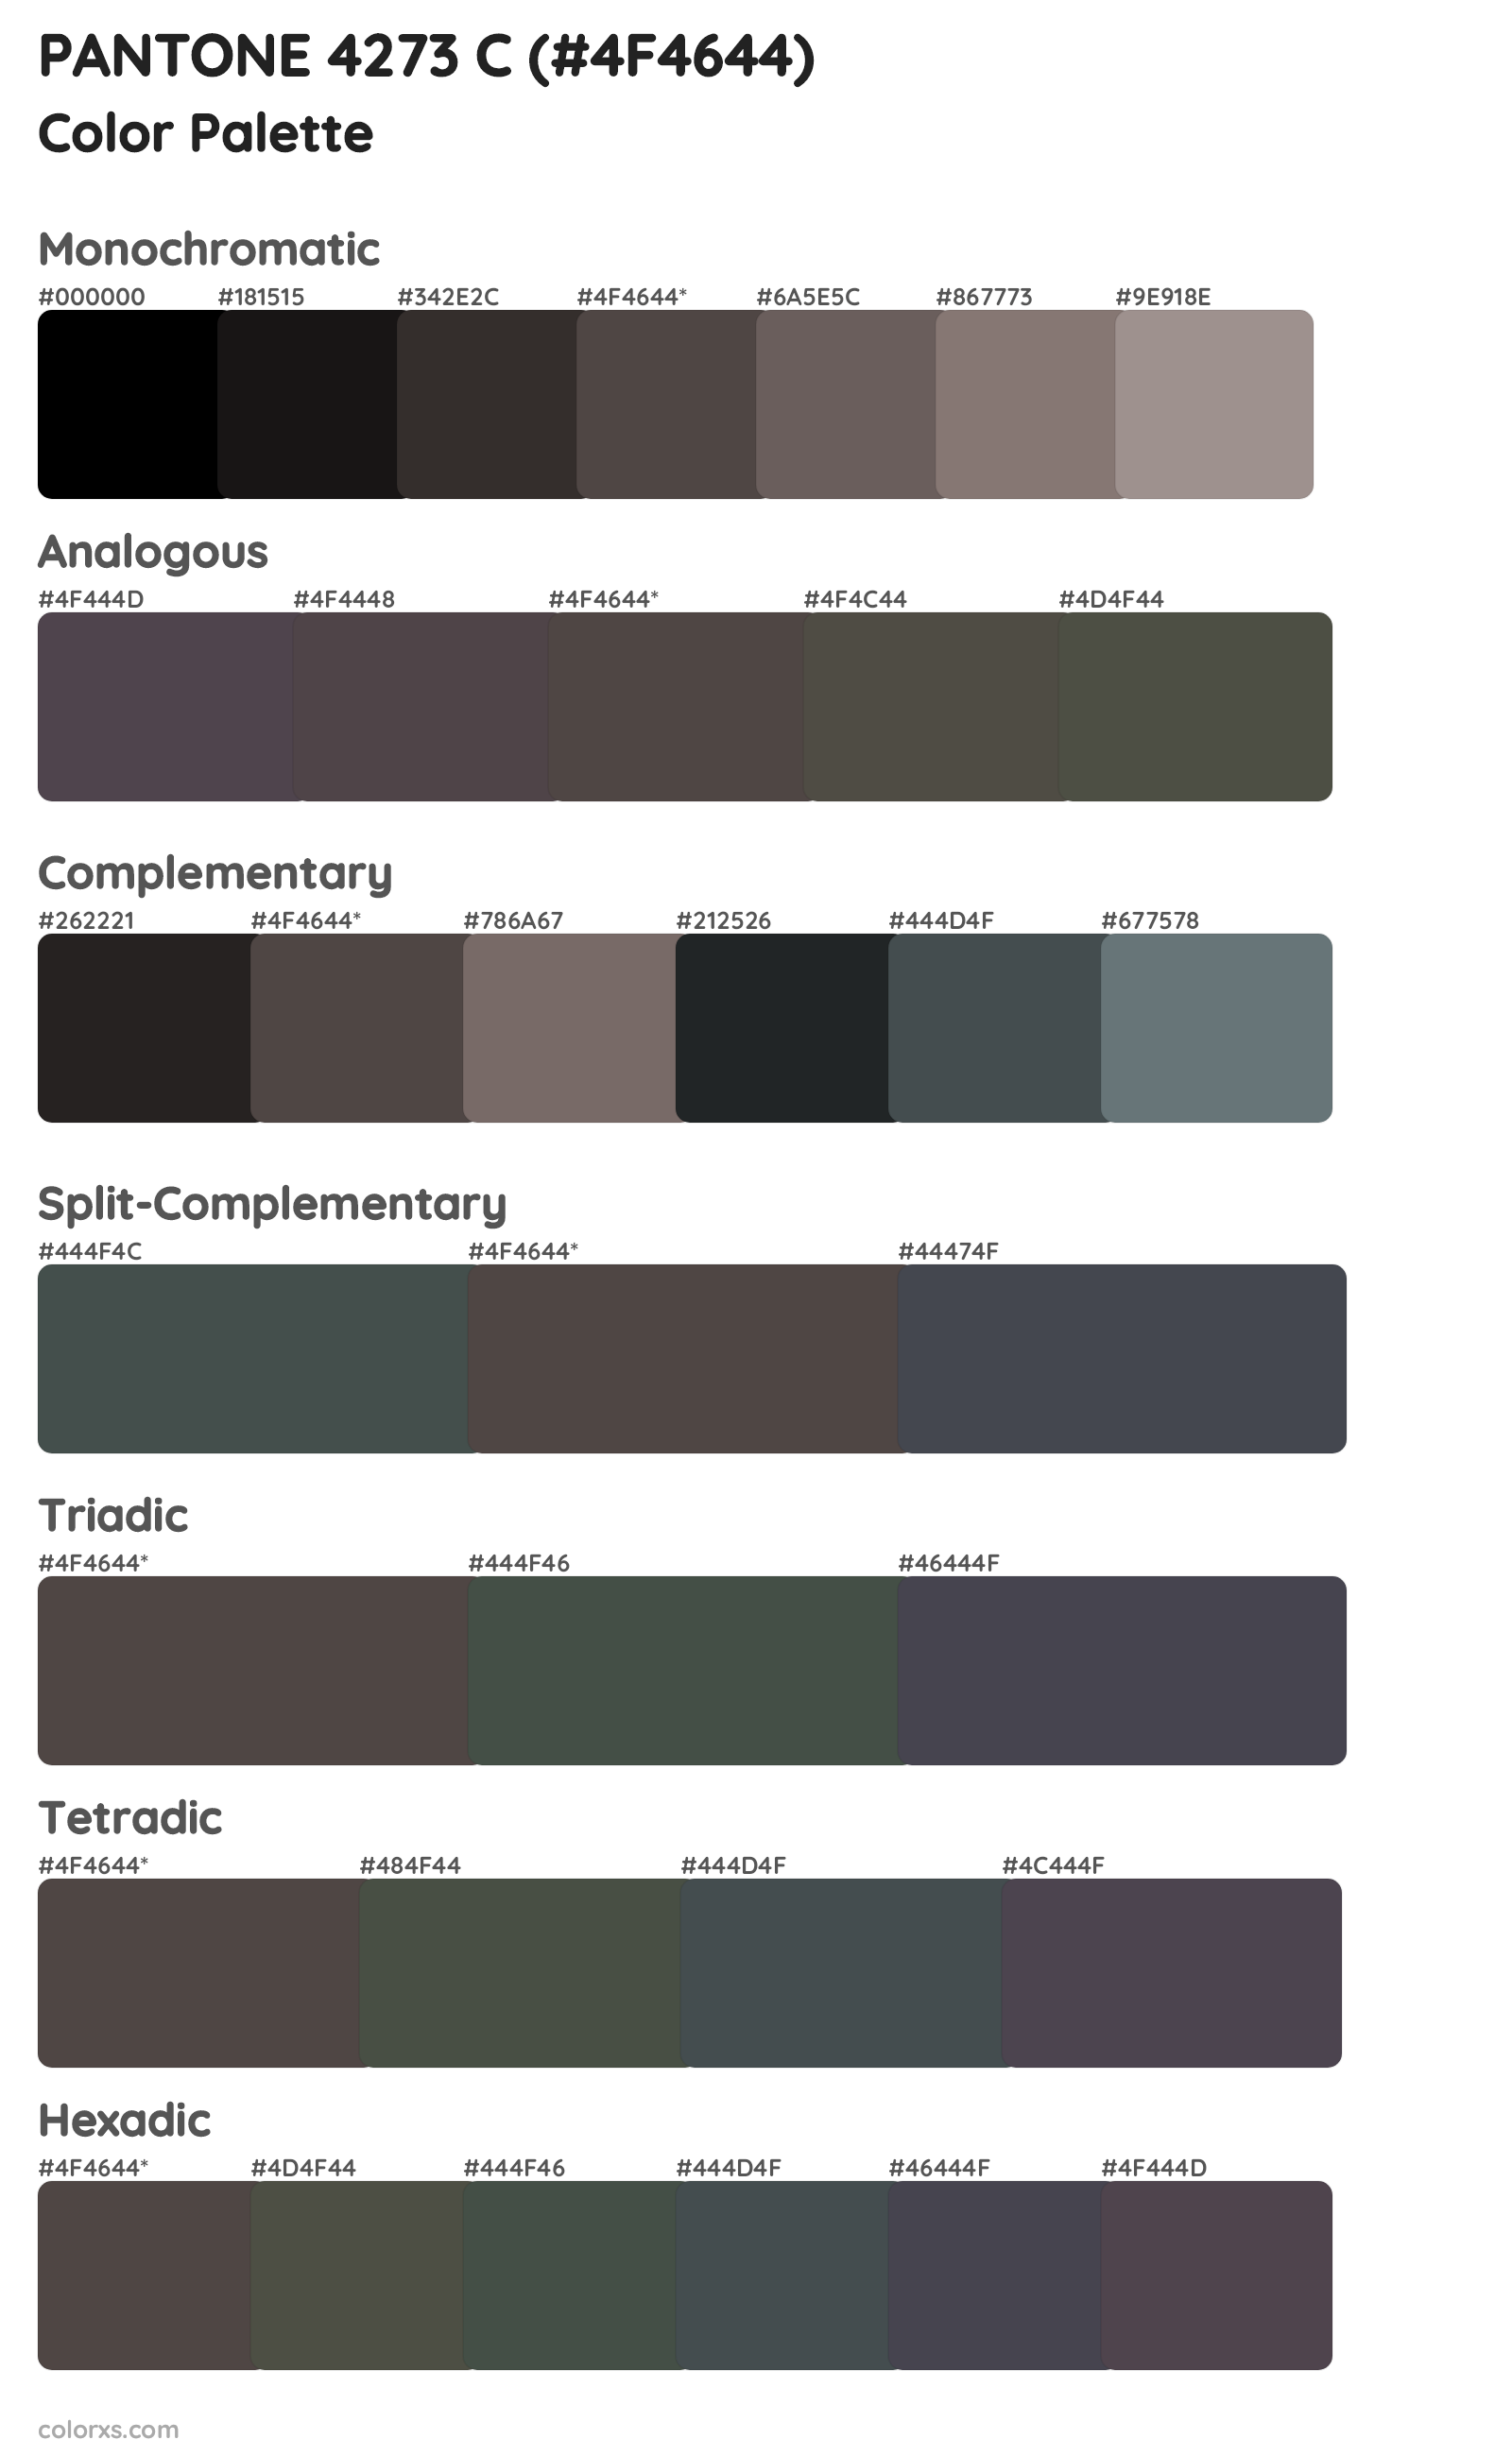 PANTONE 4273 C Color Scheme Palettes